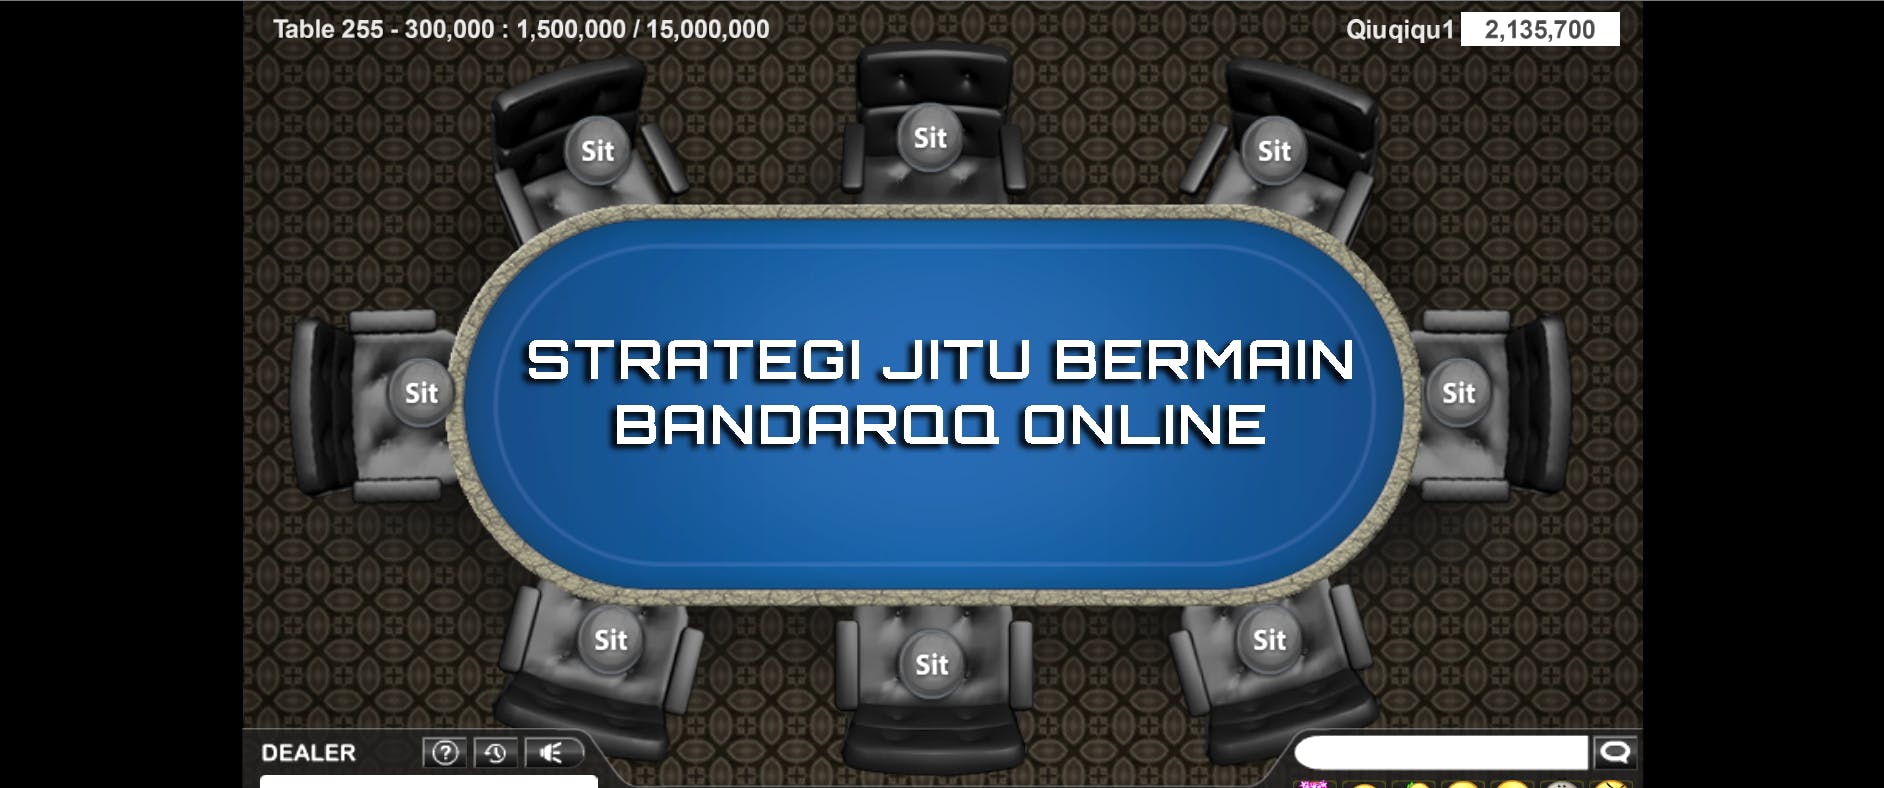 strategi jitu bermain bandarqq online.png